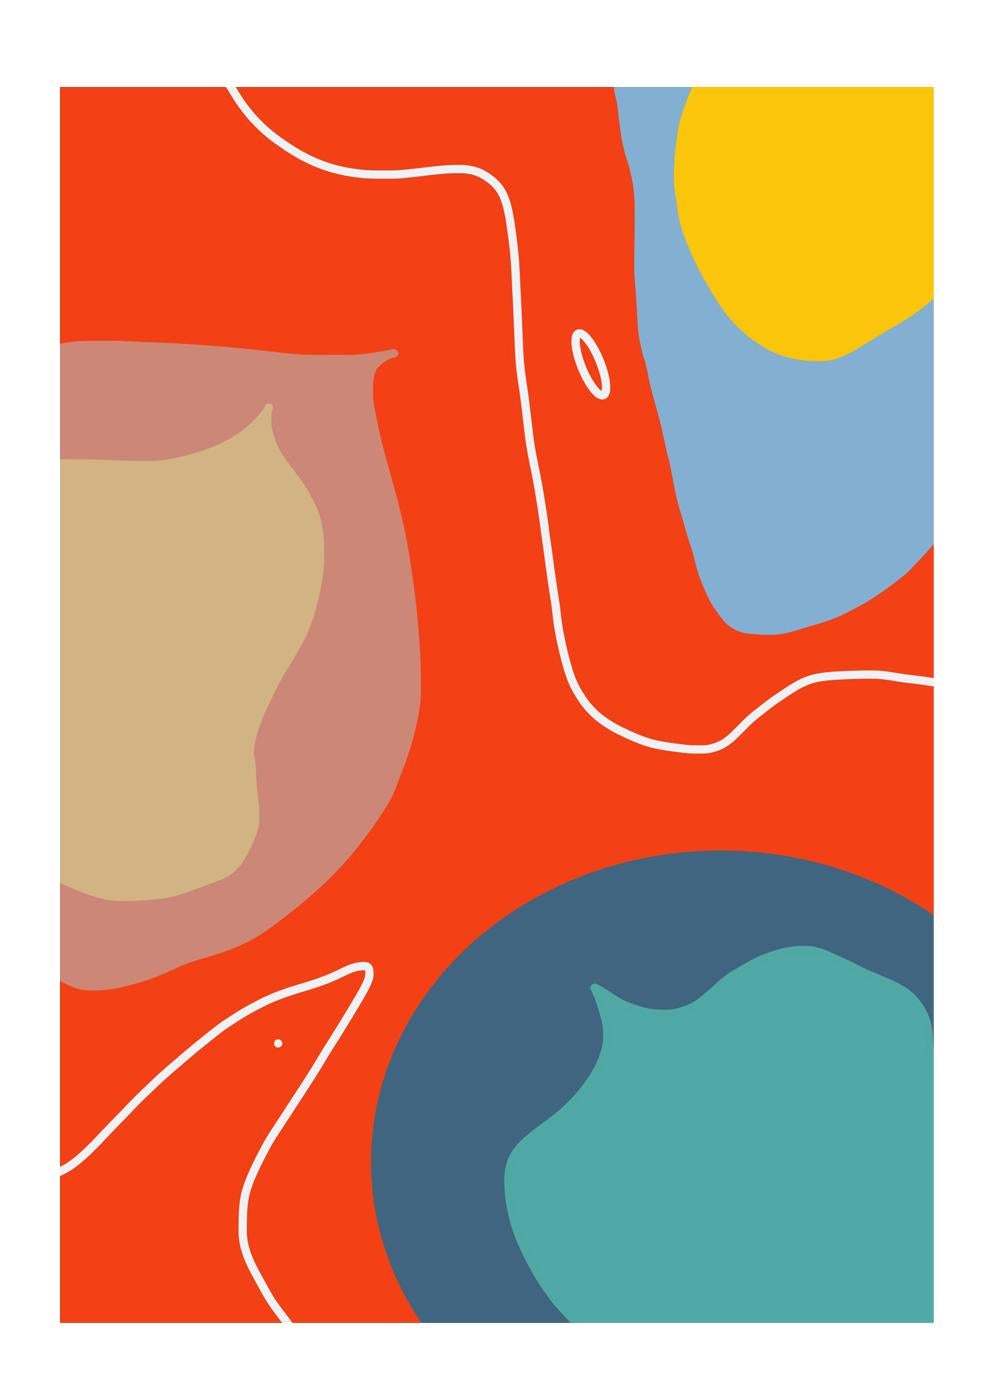 Abstract Print Angelica Tcherassi - Le Royaume 02. De la série Making Sense. Photographie couleur abstraite